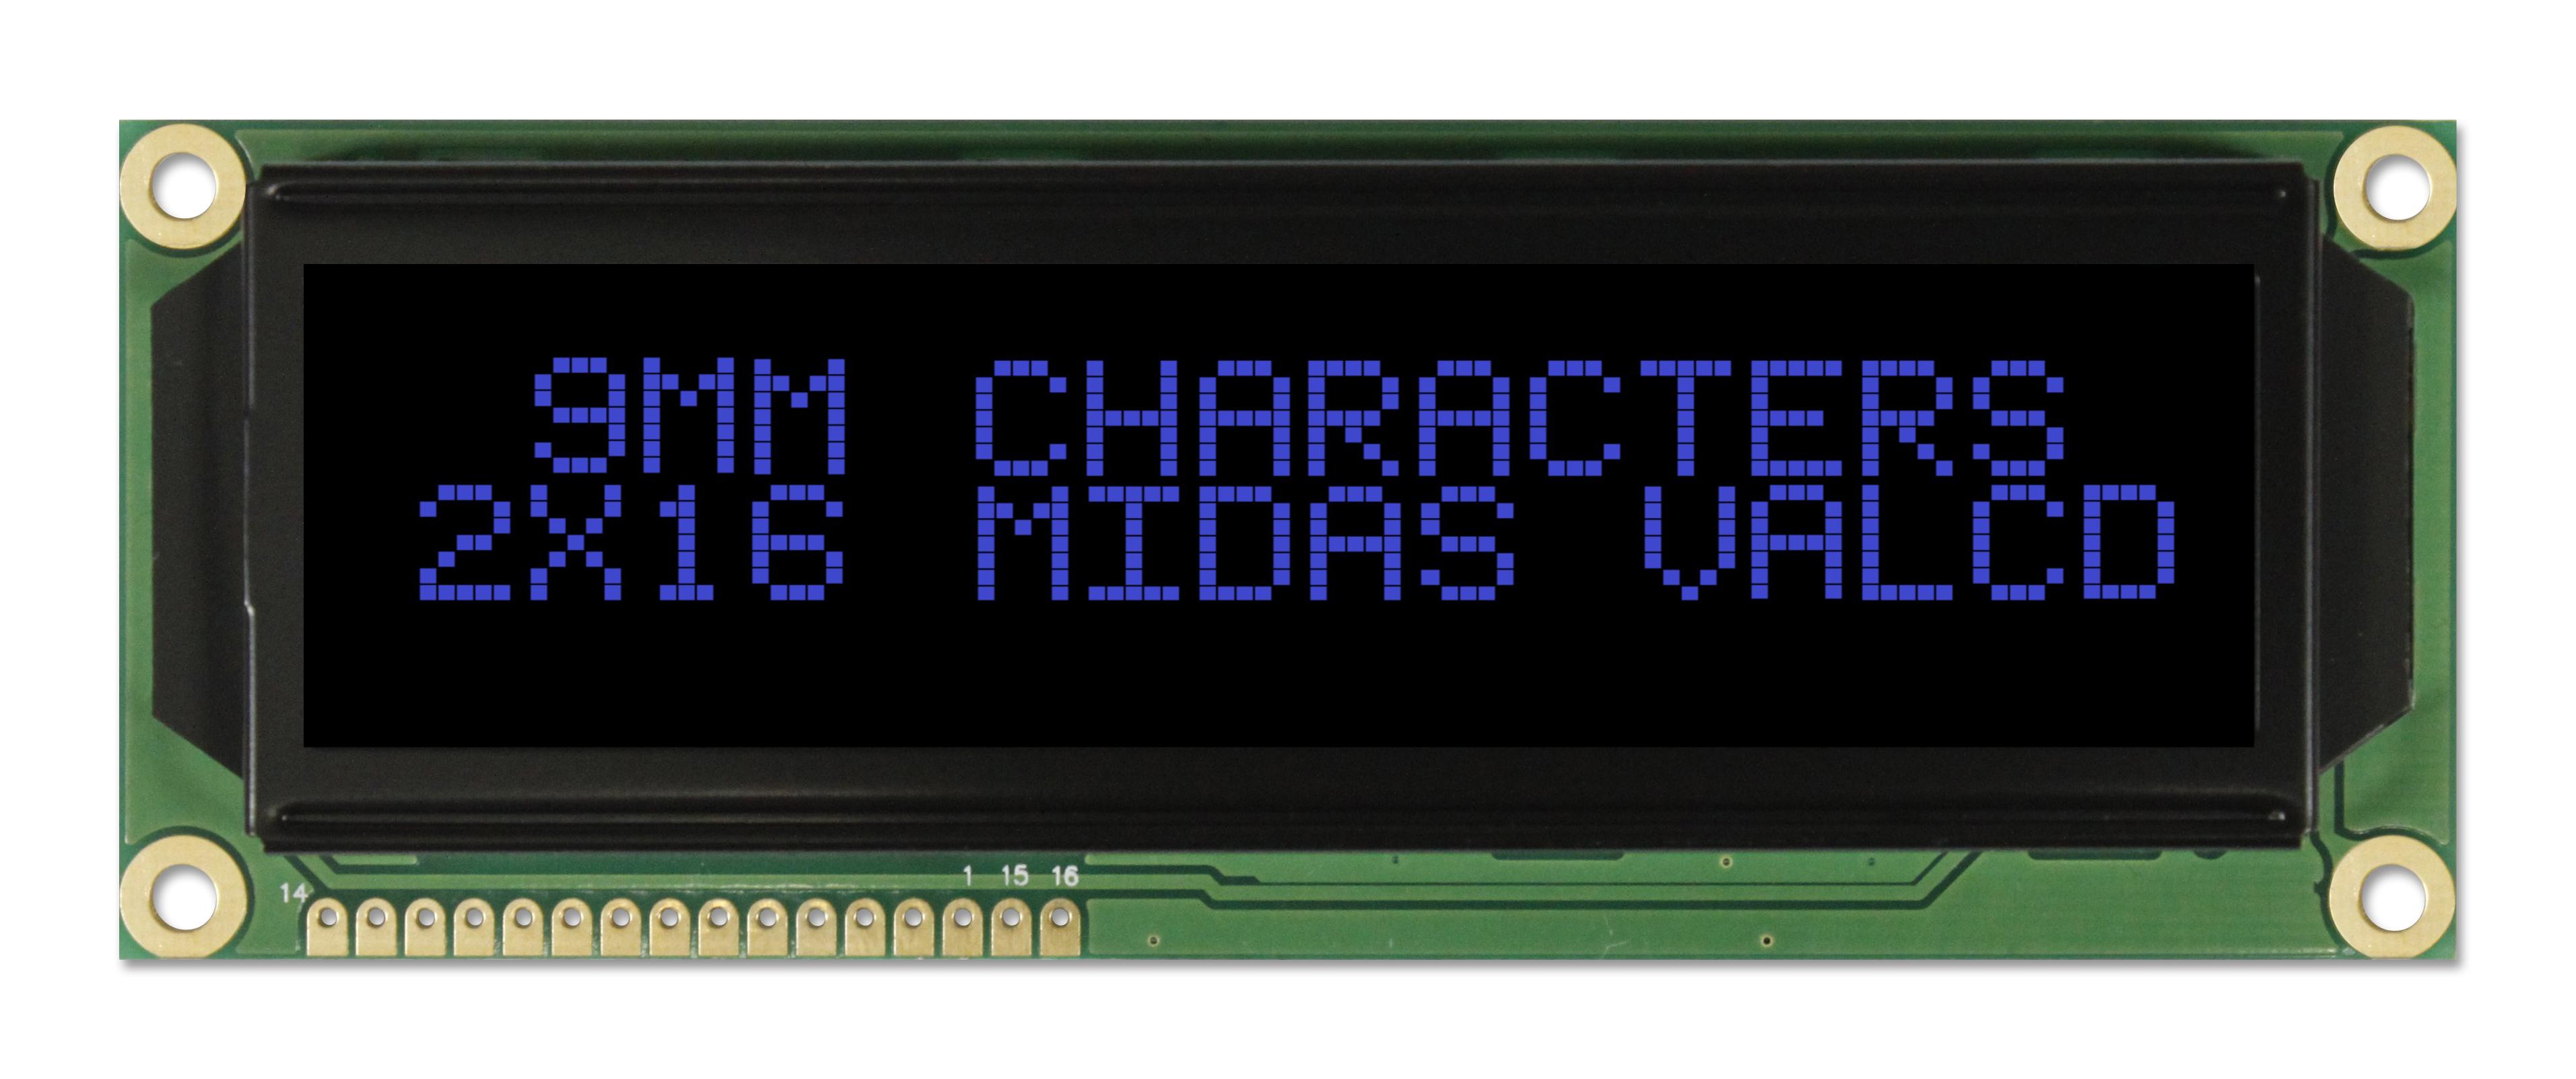 MC21609A12W-VNMLB LCD, ALPHA-NUM, 16 X 2, BLUE MIDAS